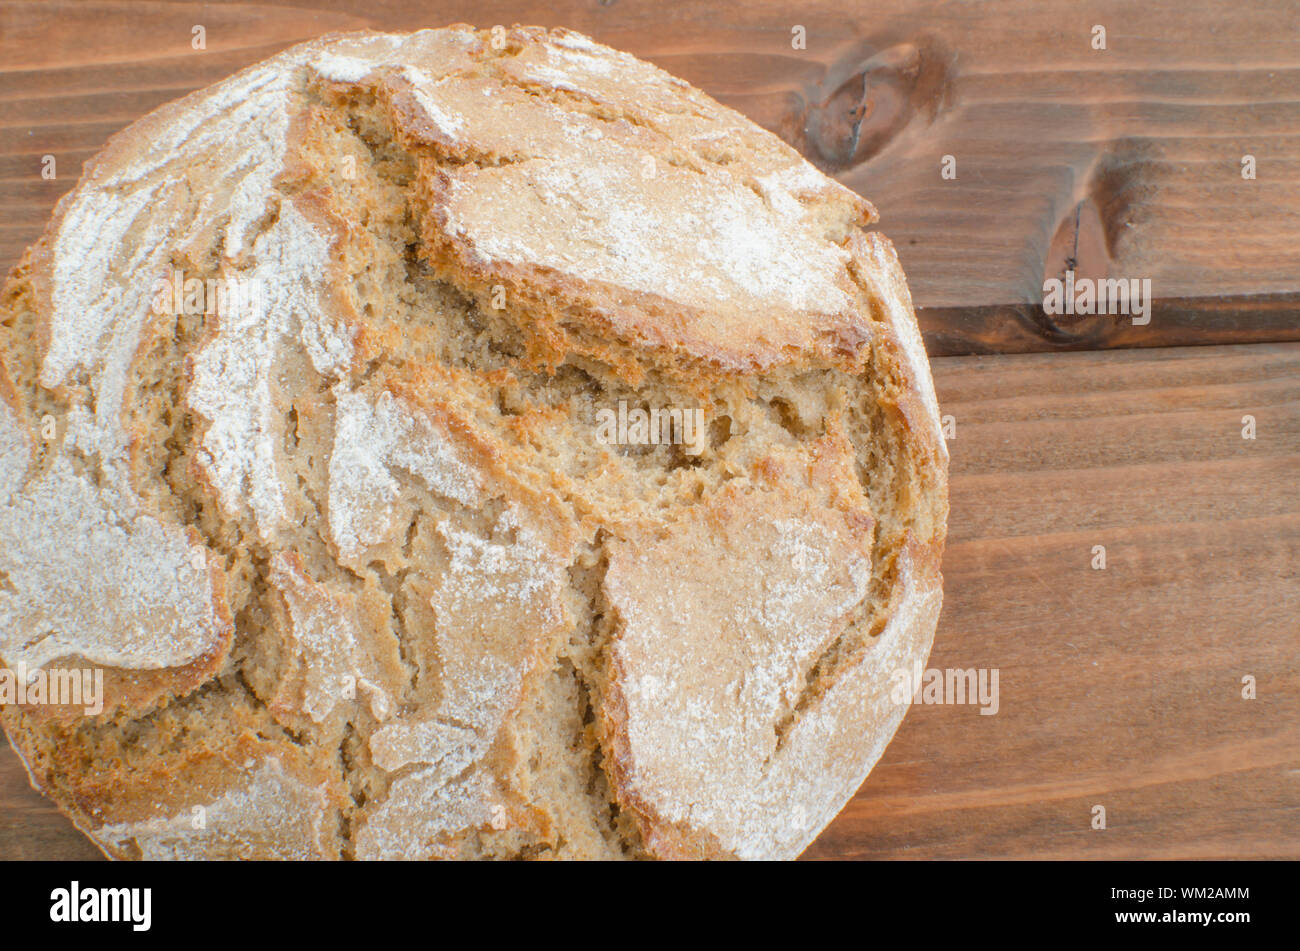 Рецепт бездрожжевого хлеба без в духовке. Бездрожжевой хлеб. Домашний хлеб. Слоеный хлеб в духовке дрожжевой. Домашний бездрожжевой хлеб.